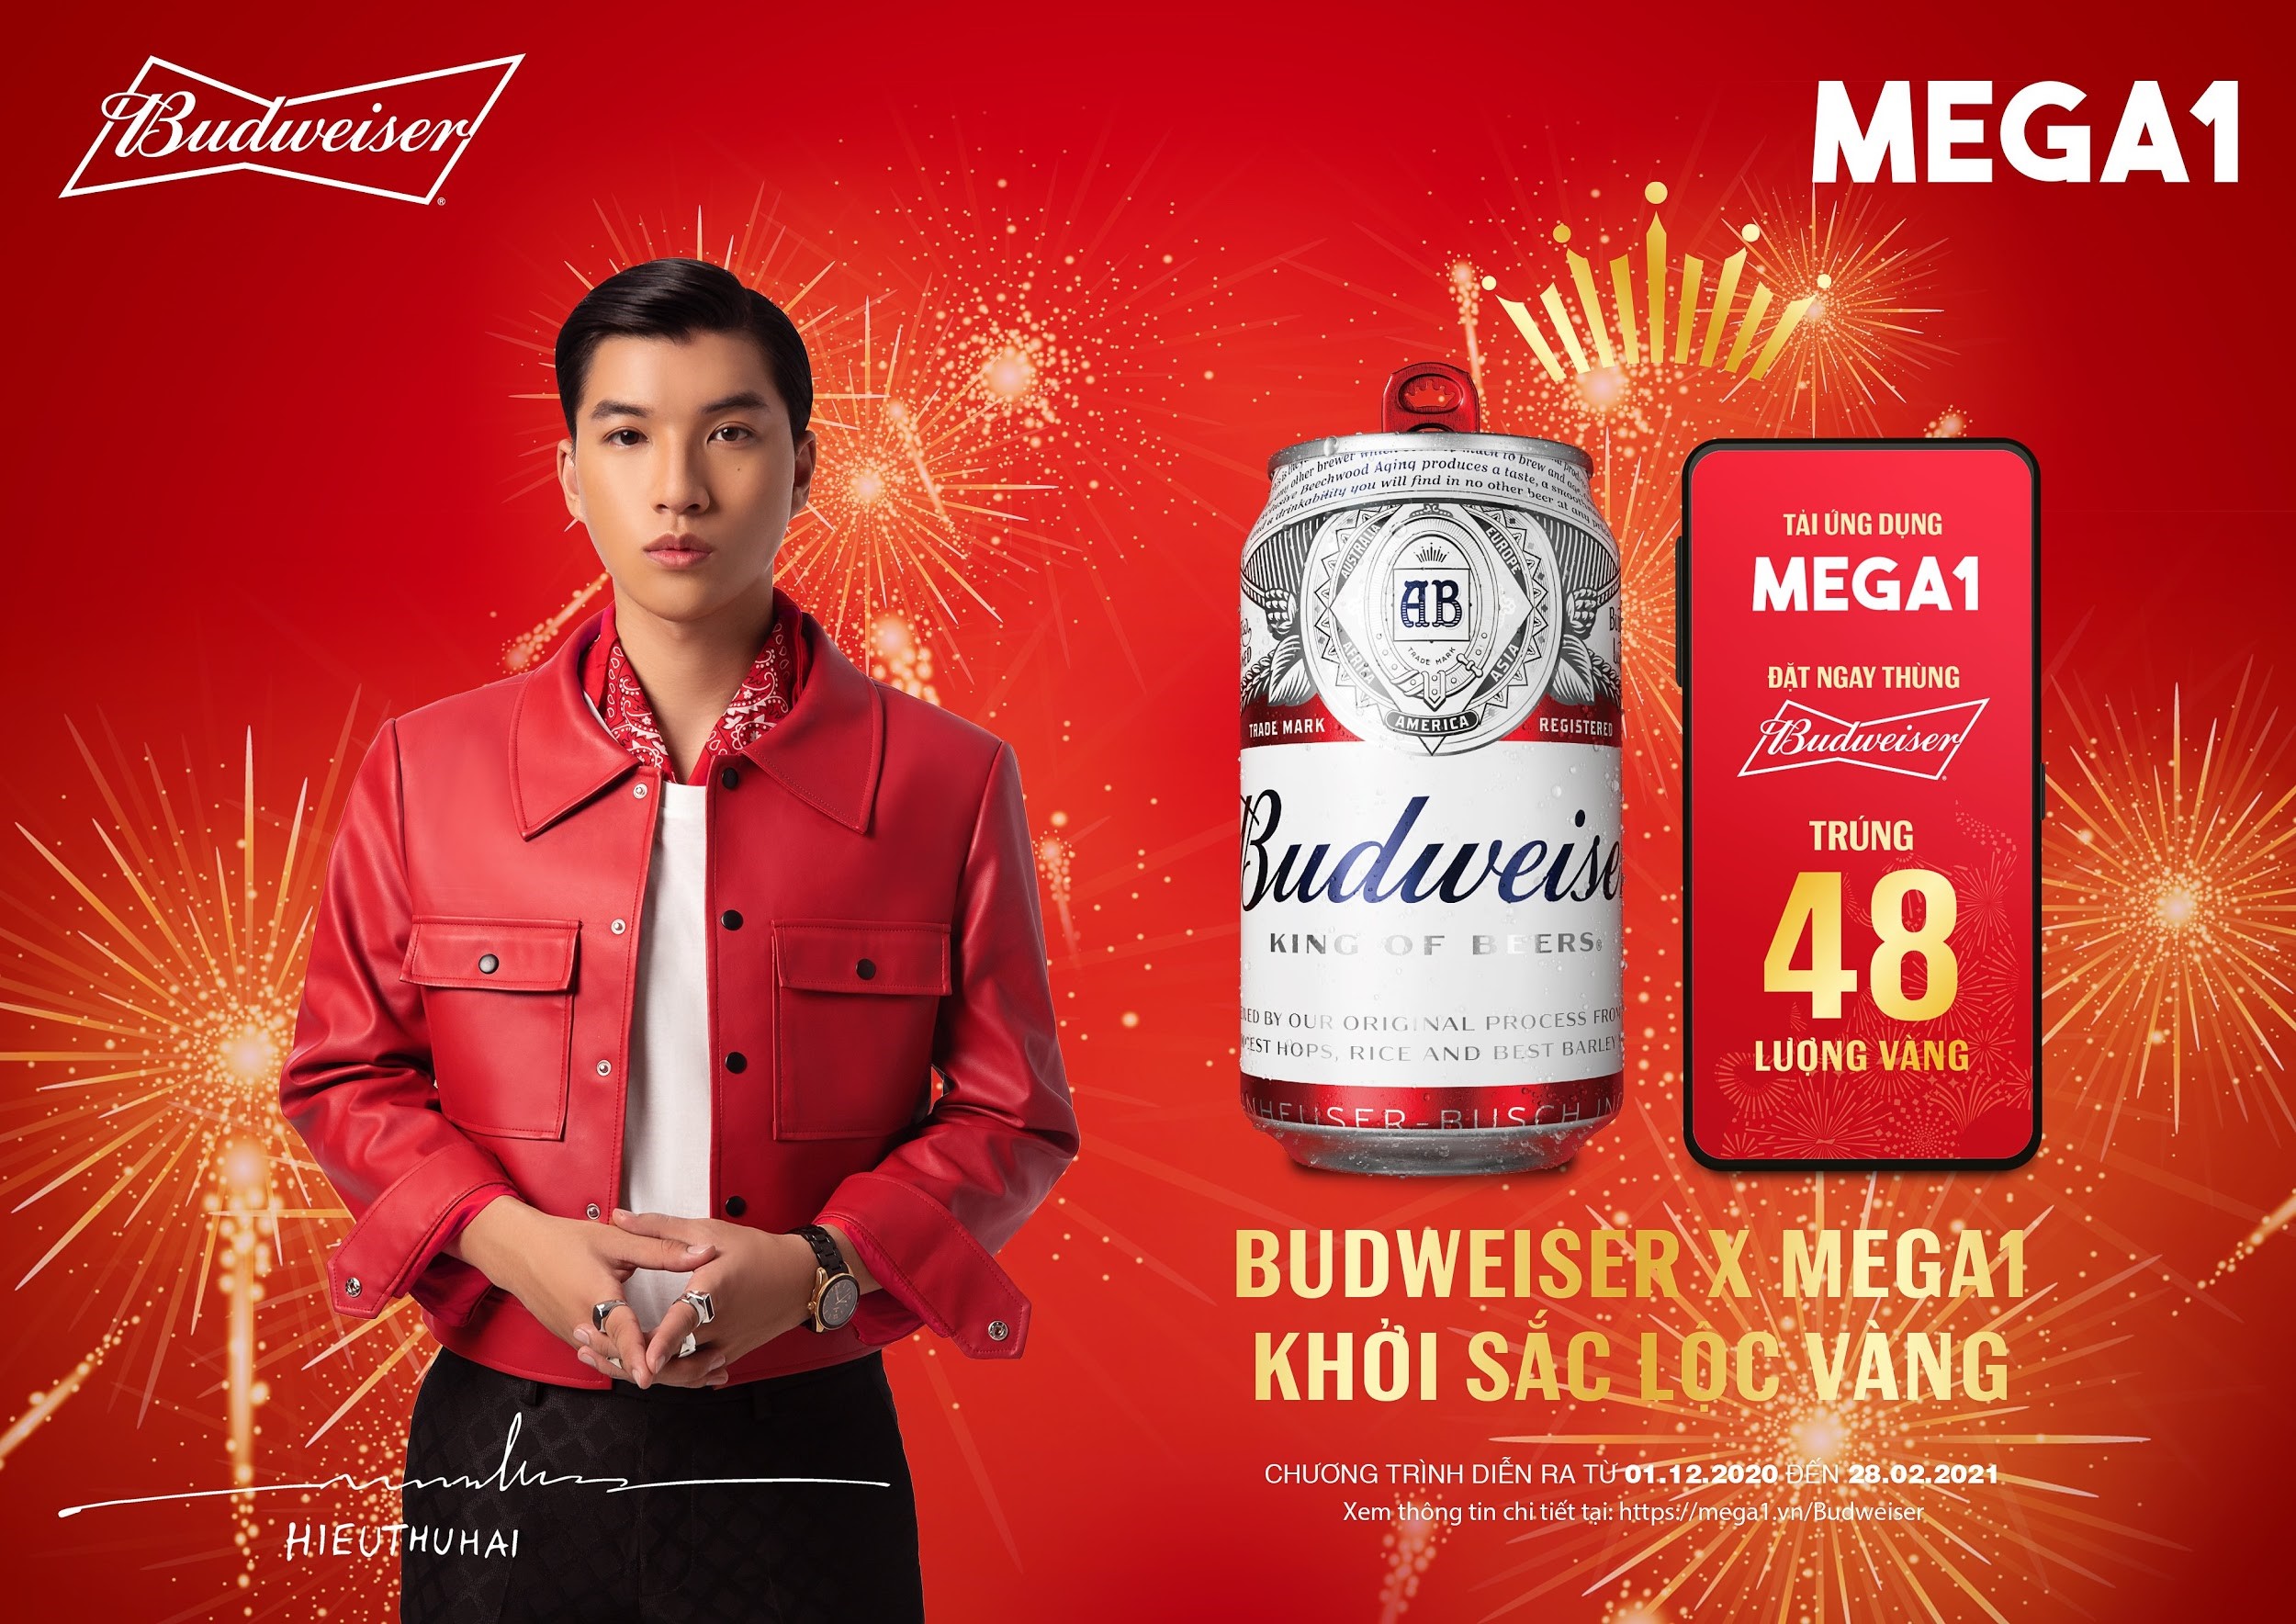 Khởi sắc lộc vàng - Cú “bắt tay” chiến lược của 2 ông lớn Budweiser và Mega1